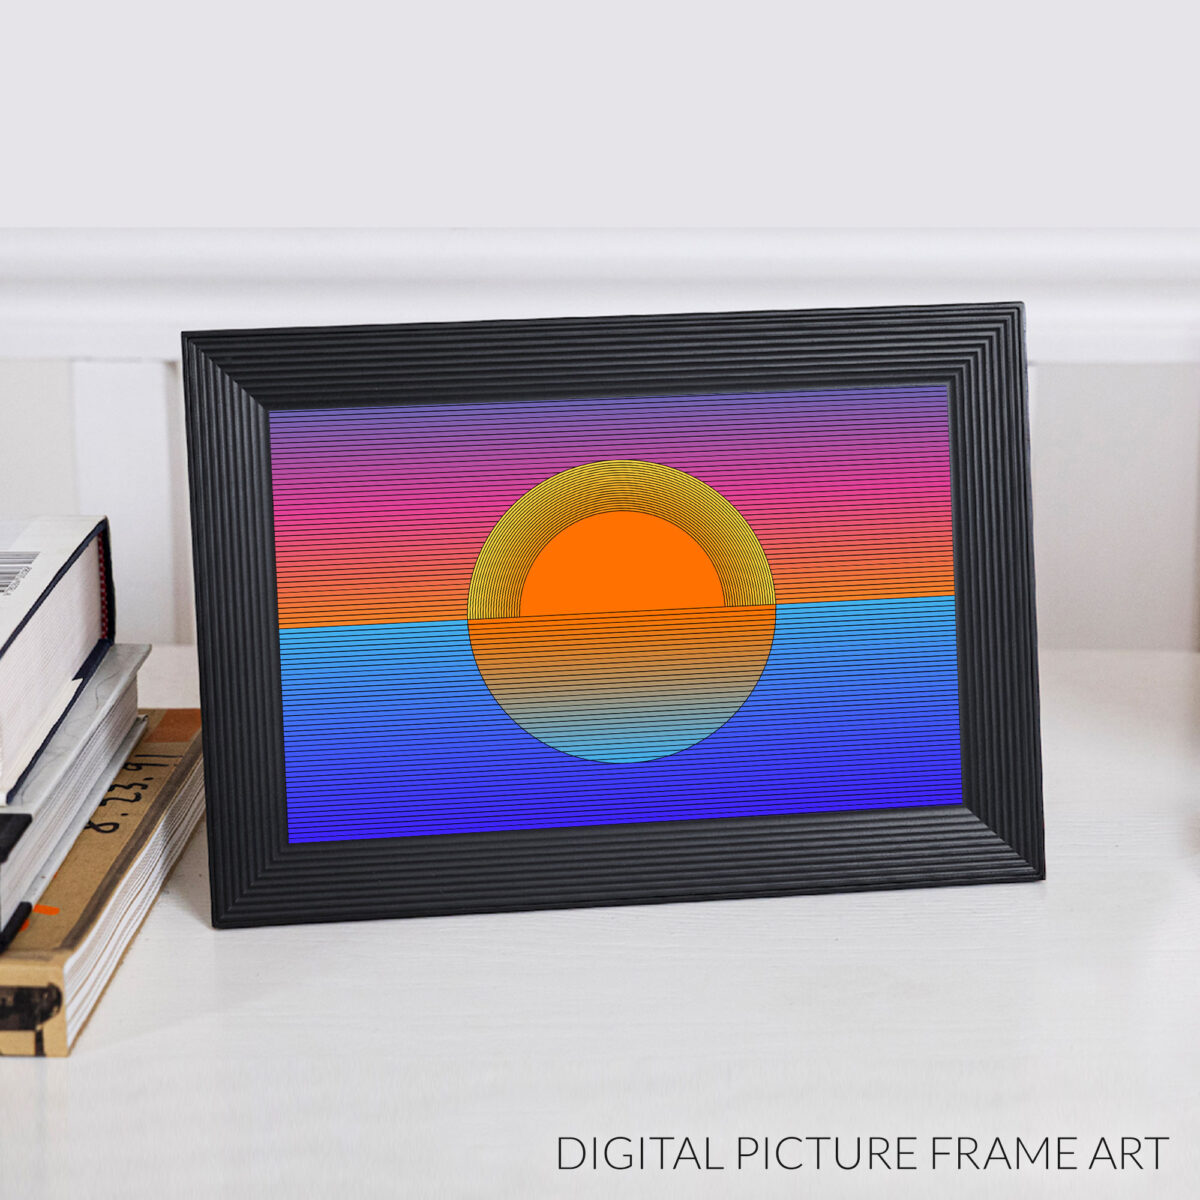 Sunset digital wallpaper design in a digital picture frame.